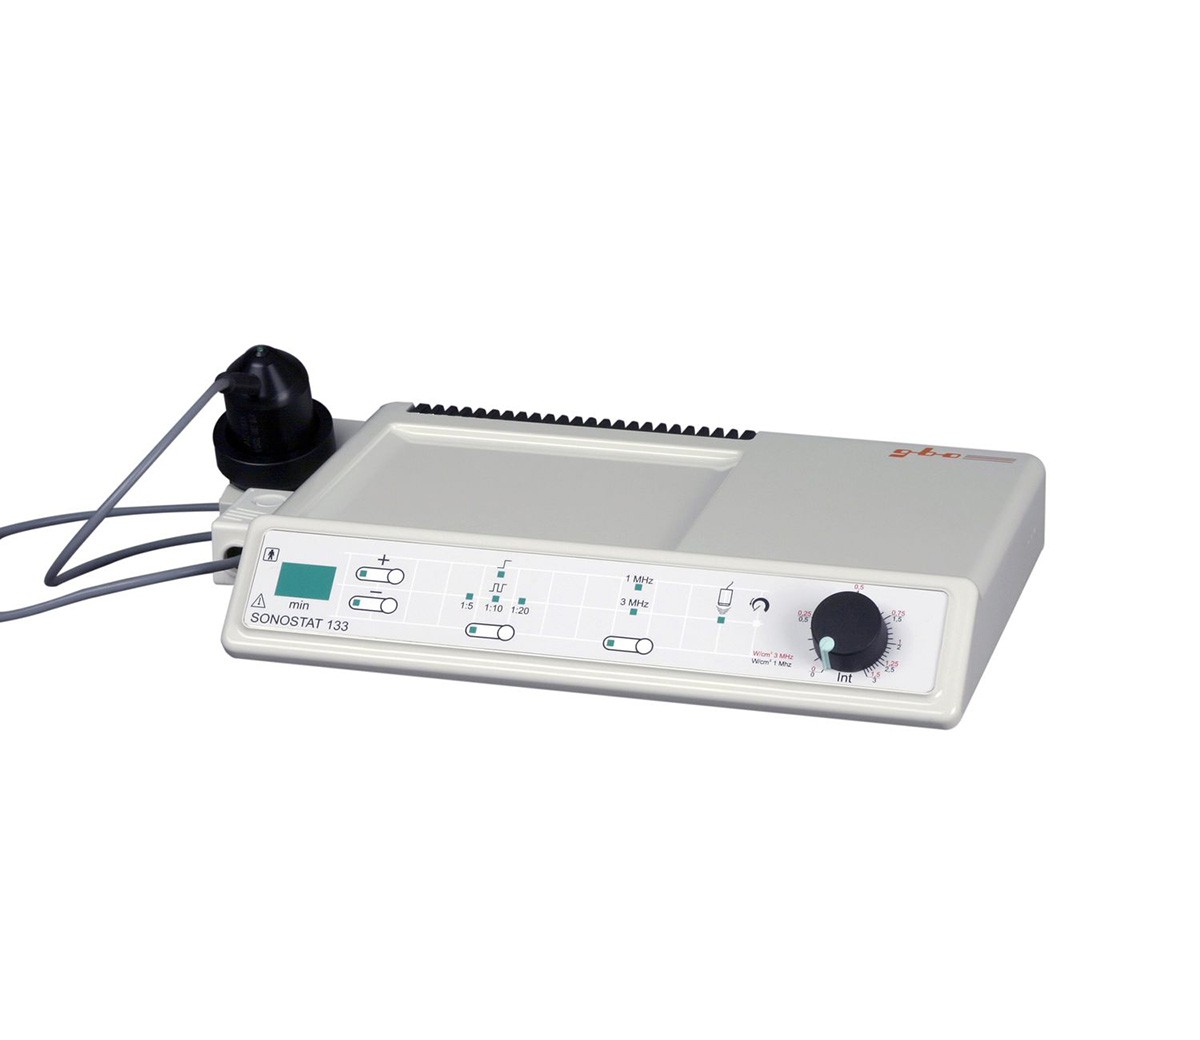 Аппарат ультразвуковой терапии Sonostat 133